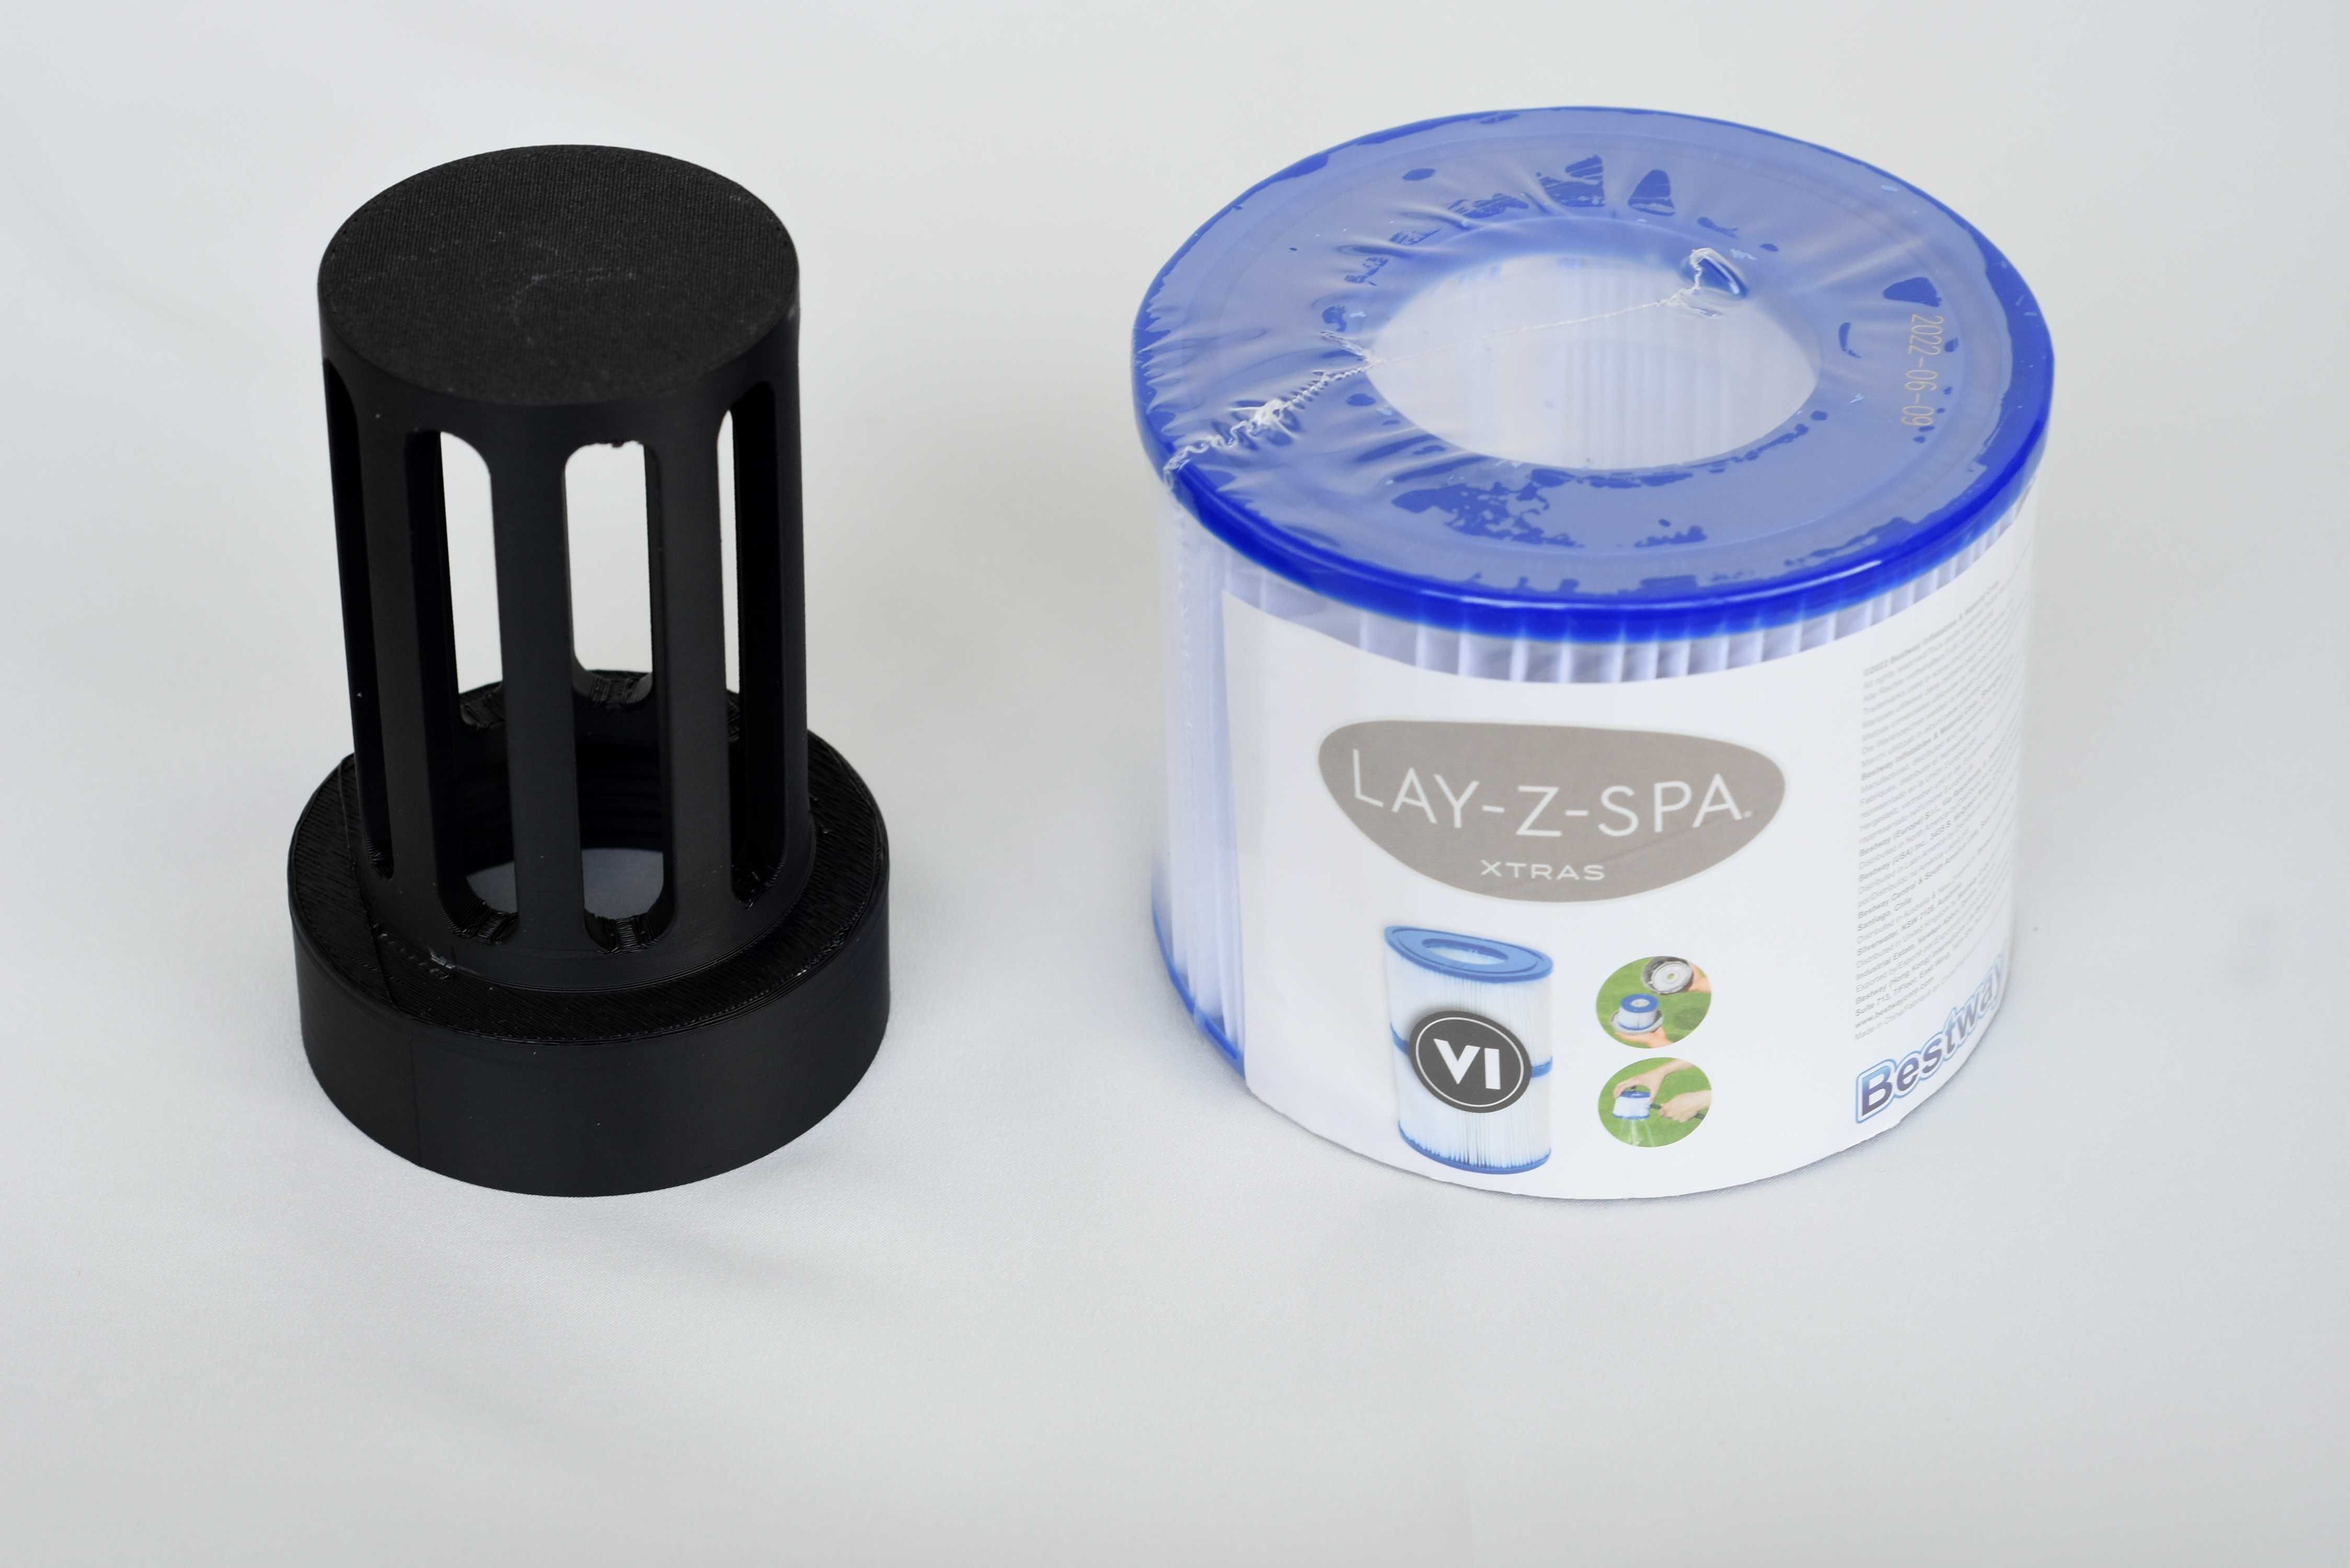 CleverSpa adapter do tańszych filtrów Lay-Z-Spa jacuzzi basen SPA